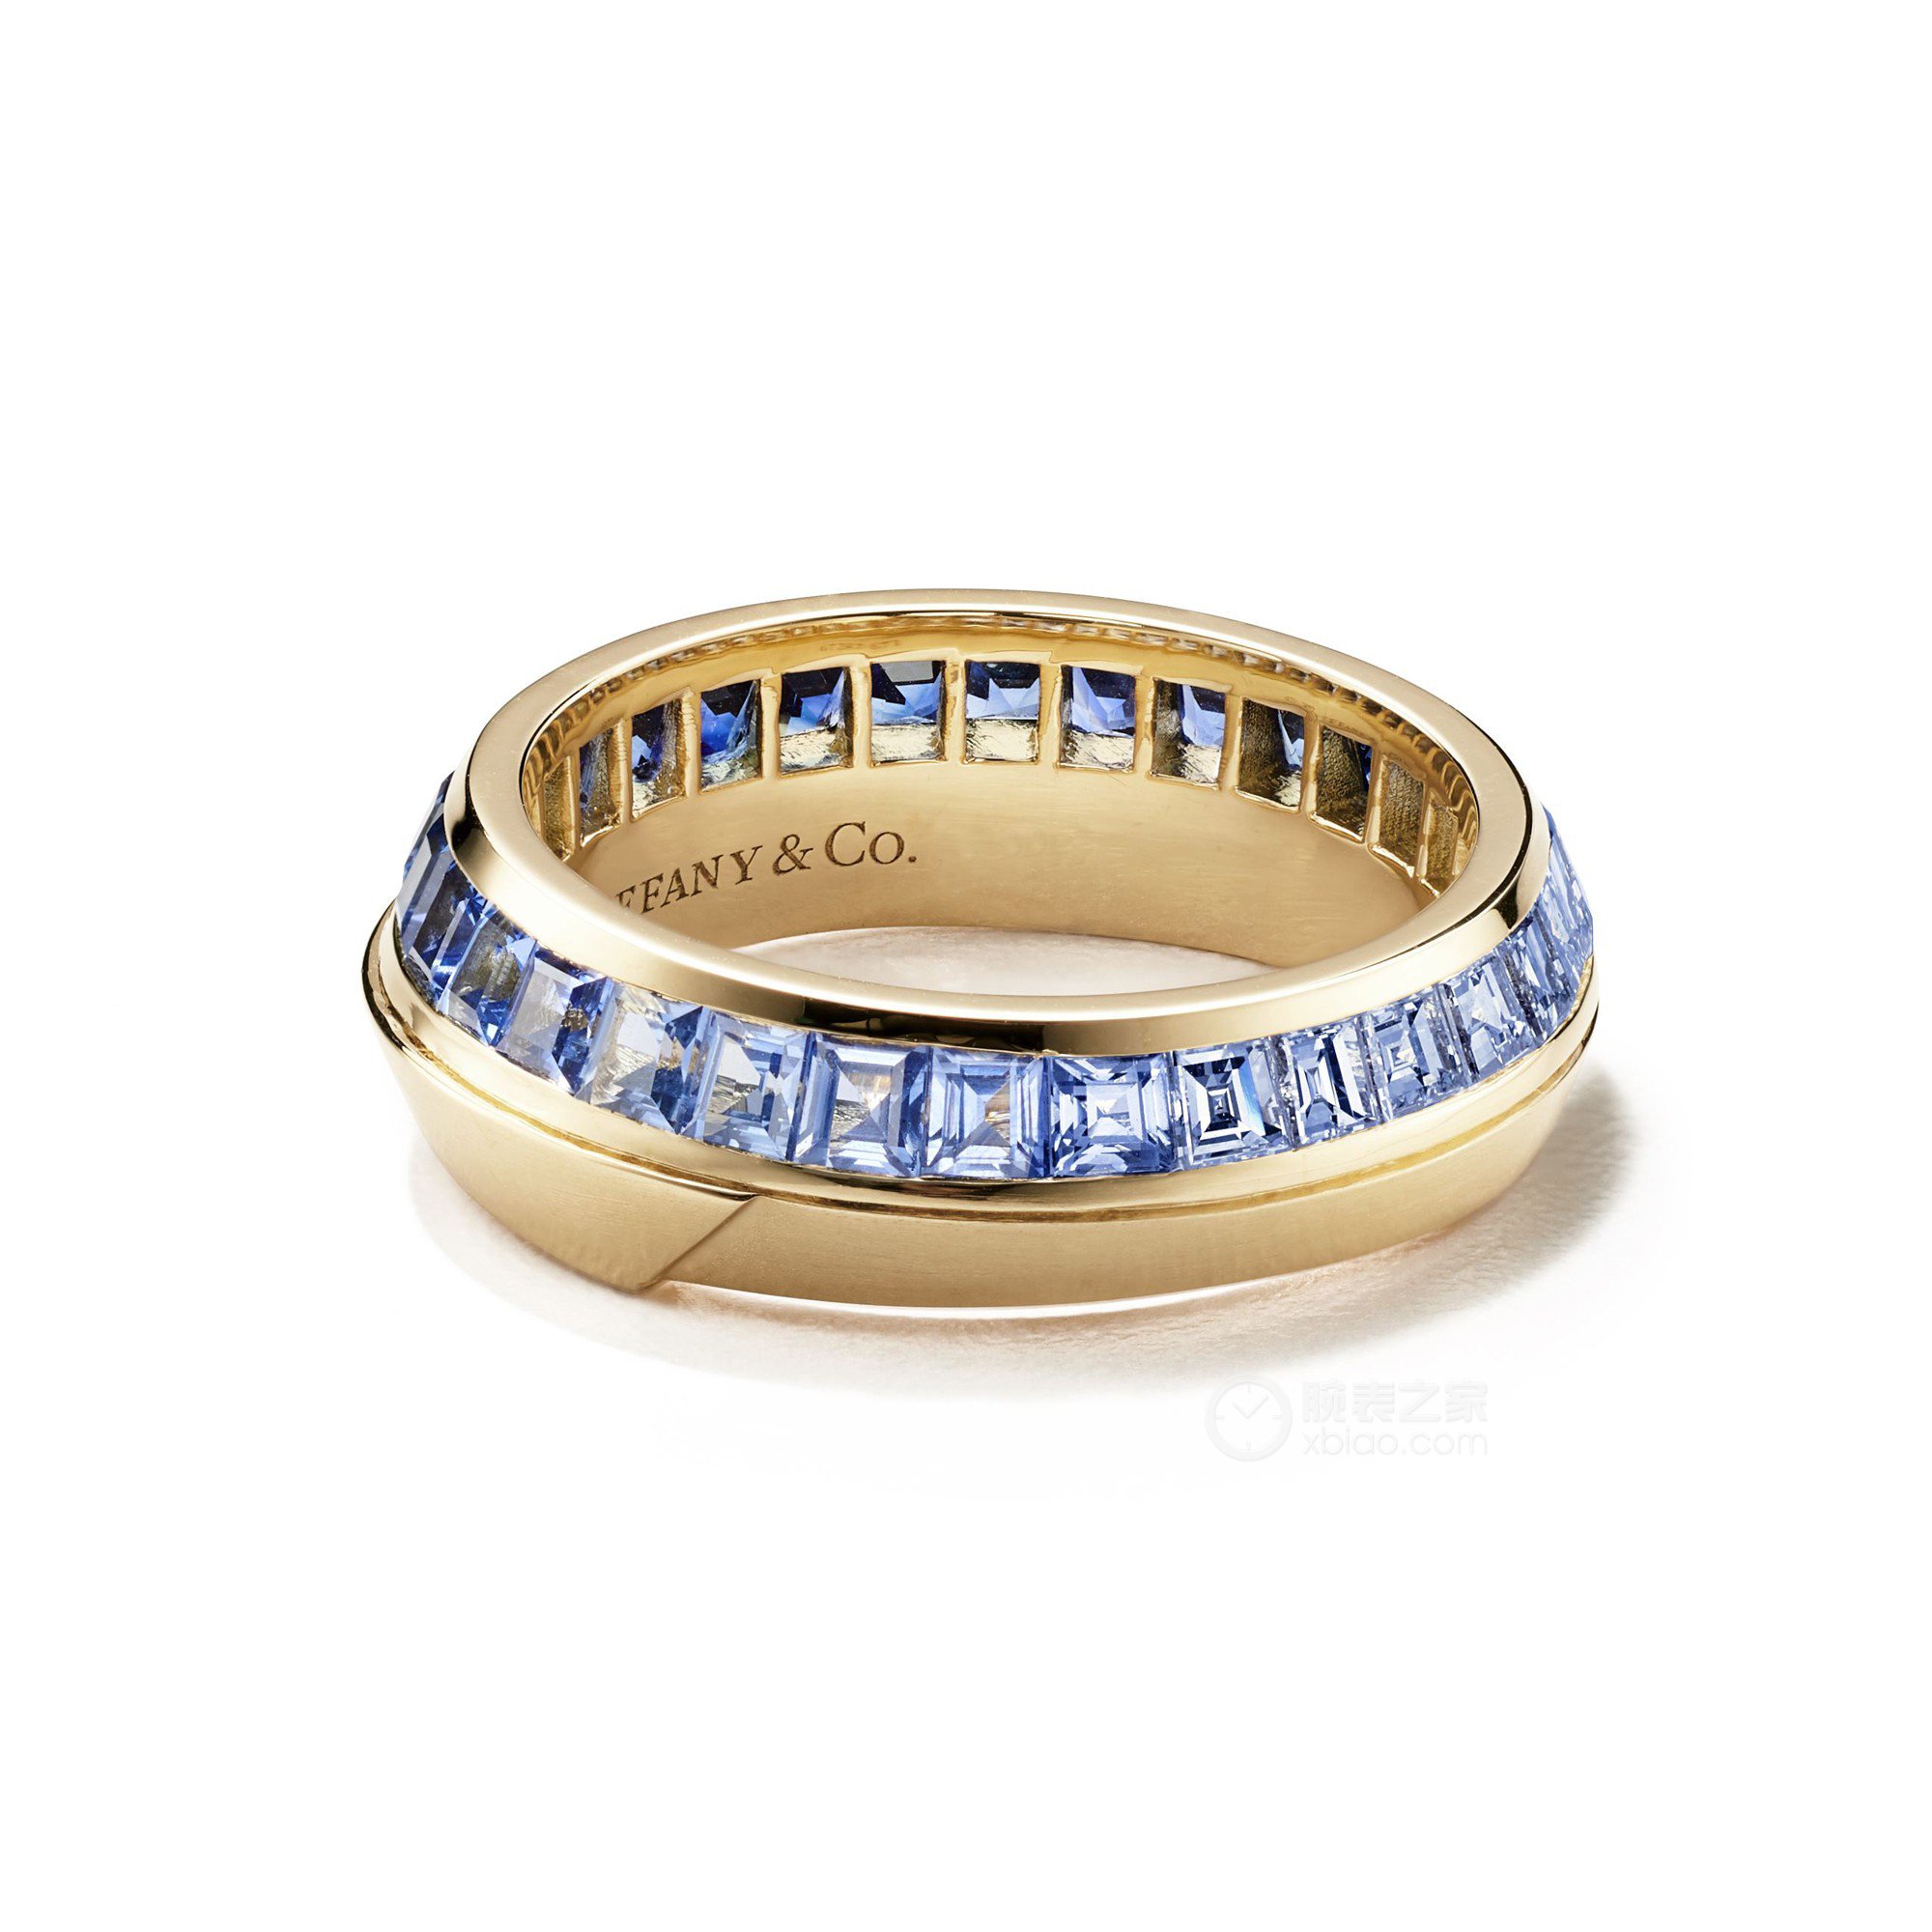 铂金镶嵌公主方形切割钻石订婚钻戒:蒂芙尼经典钻戒。 | Tiffany & Co.